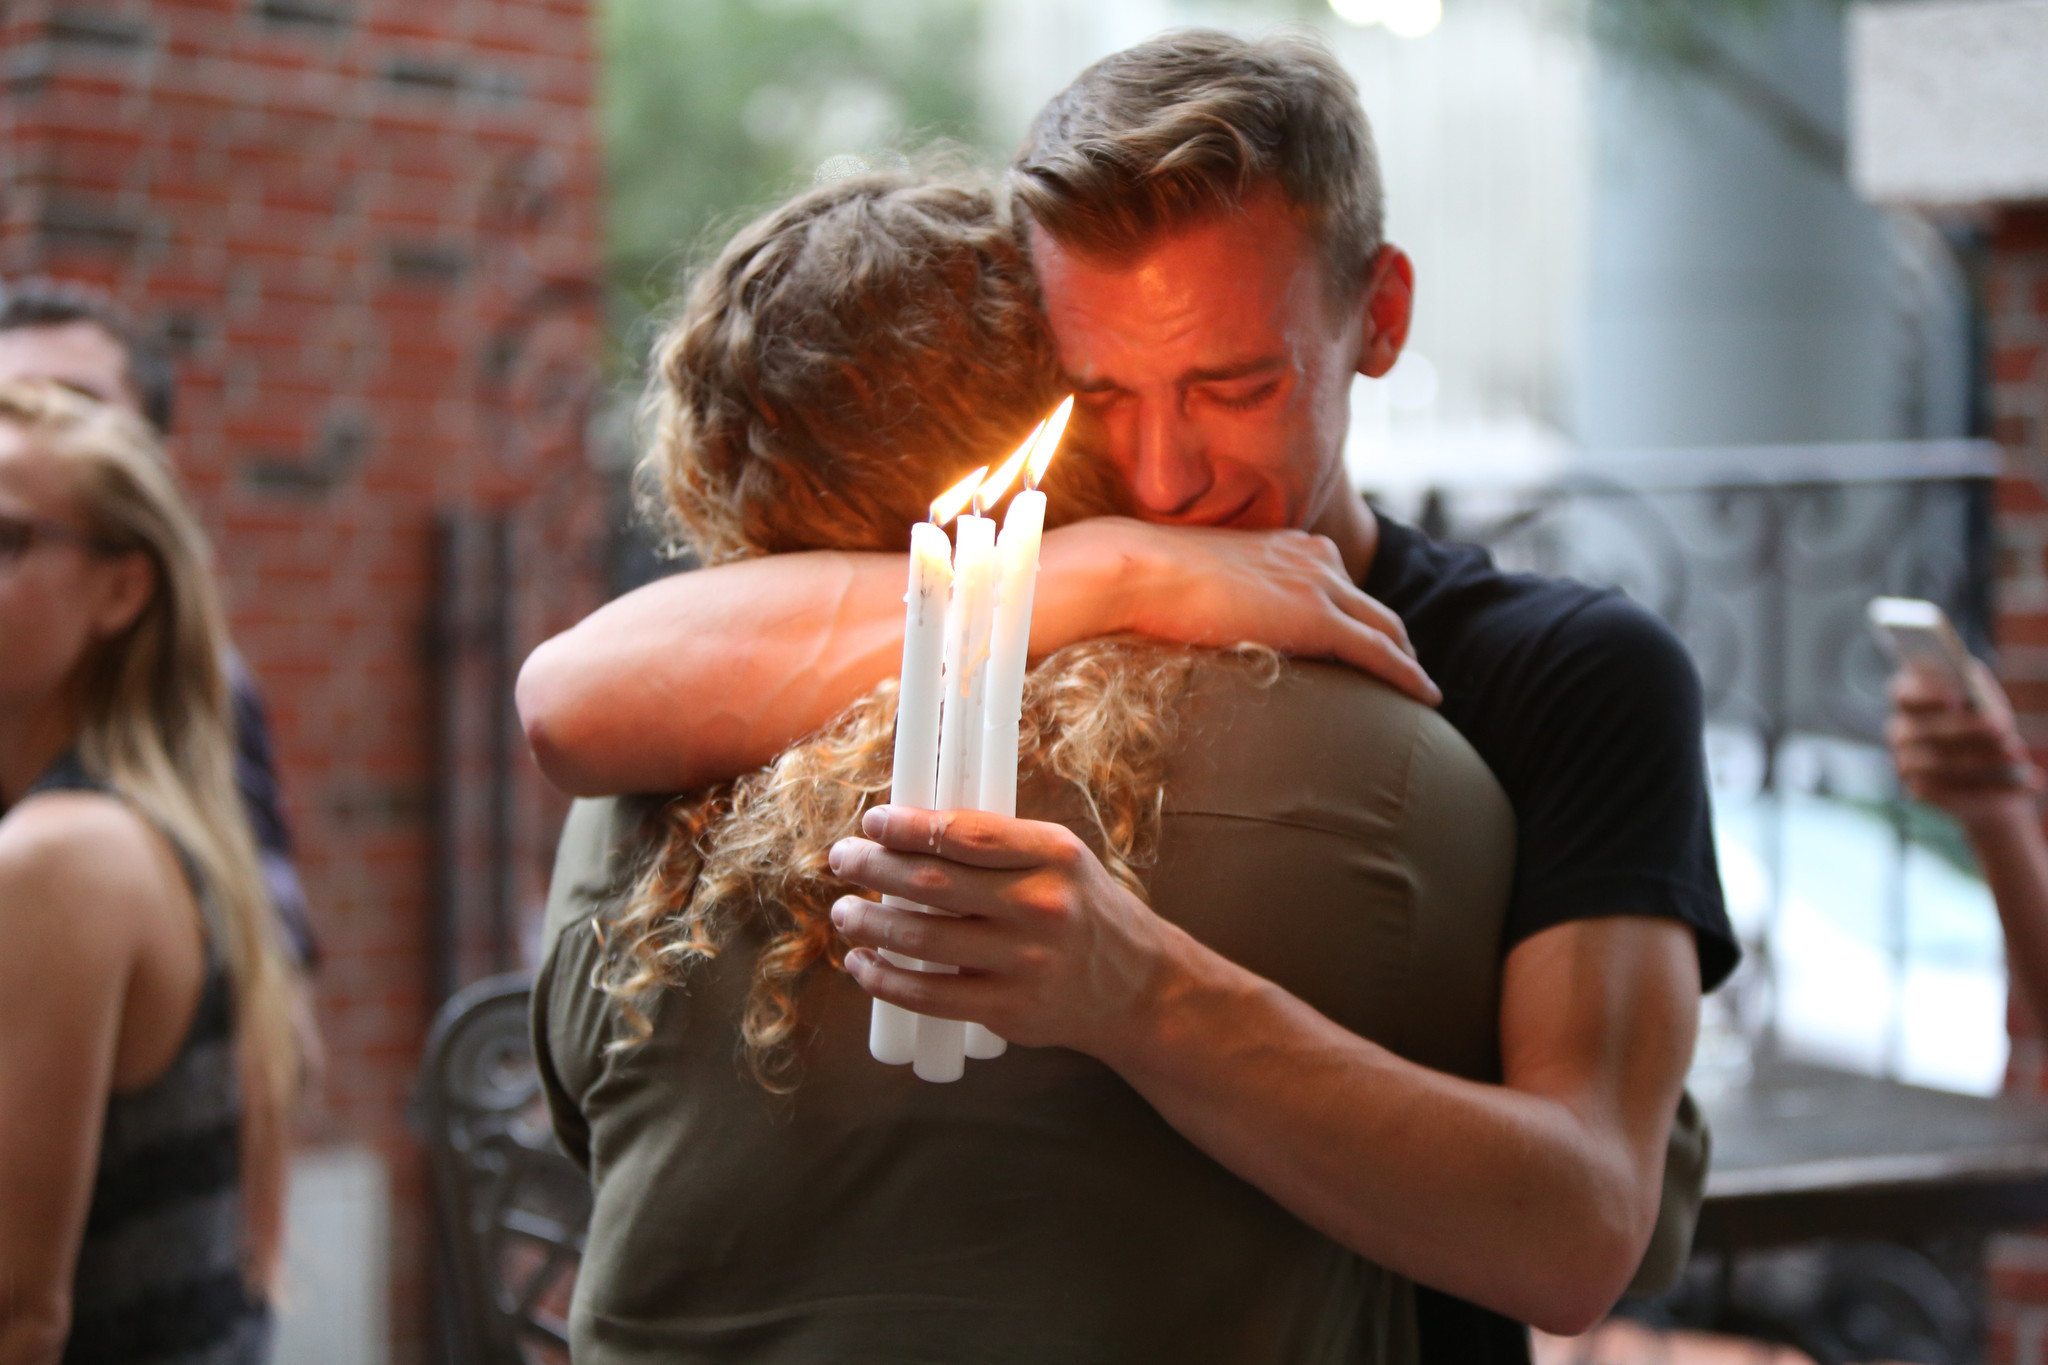  Para conocer más acerca del tiroteo en Orlando